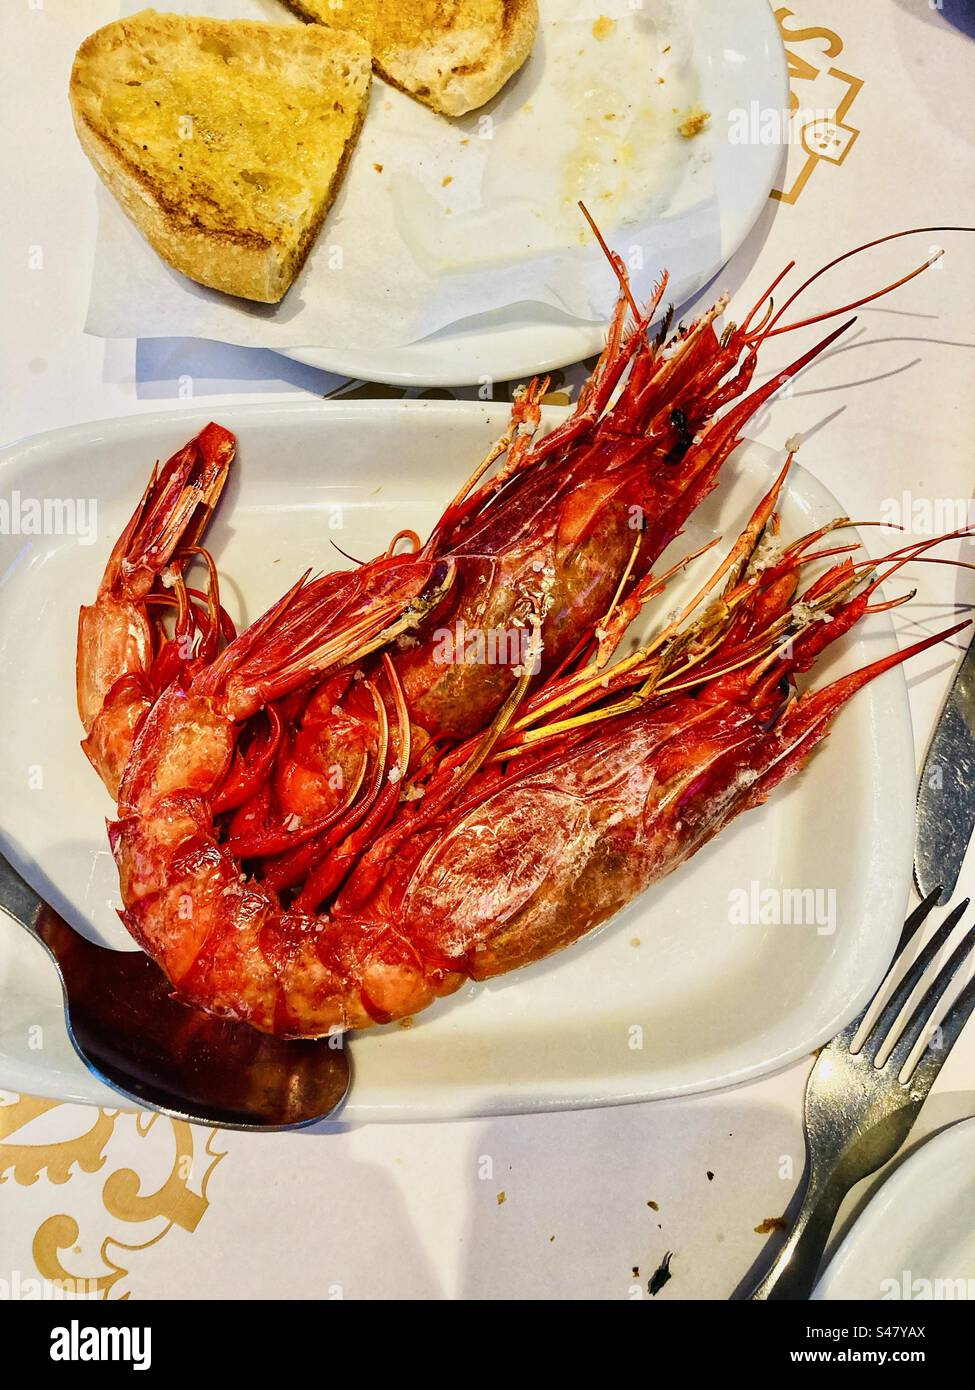 Crevettes écarlates ou crevettes cardinales prêtes à manger au Portugal appelées Carabineros Banque D'Images